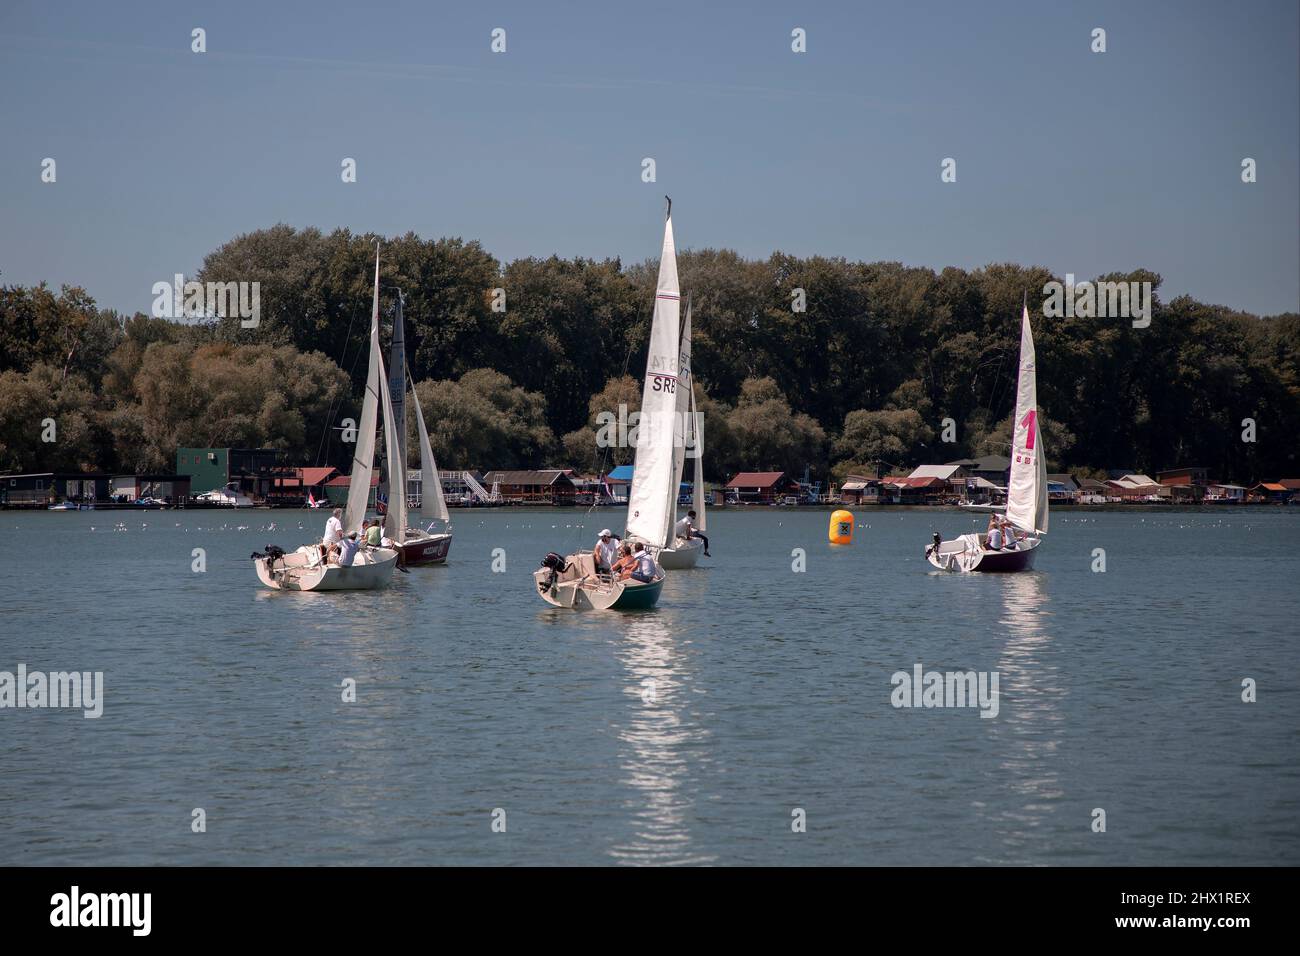 Belgrado, Serbia, 18 agosto 2019: Squadre in tre persone che gareggiano nella regata di vela Micro Class sul fiume Sava Foto Stock